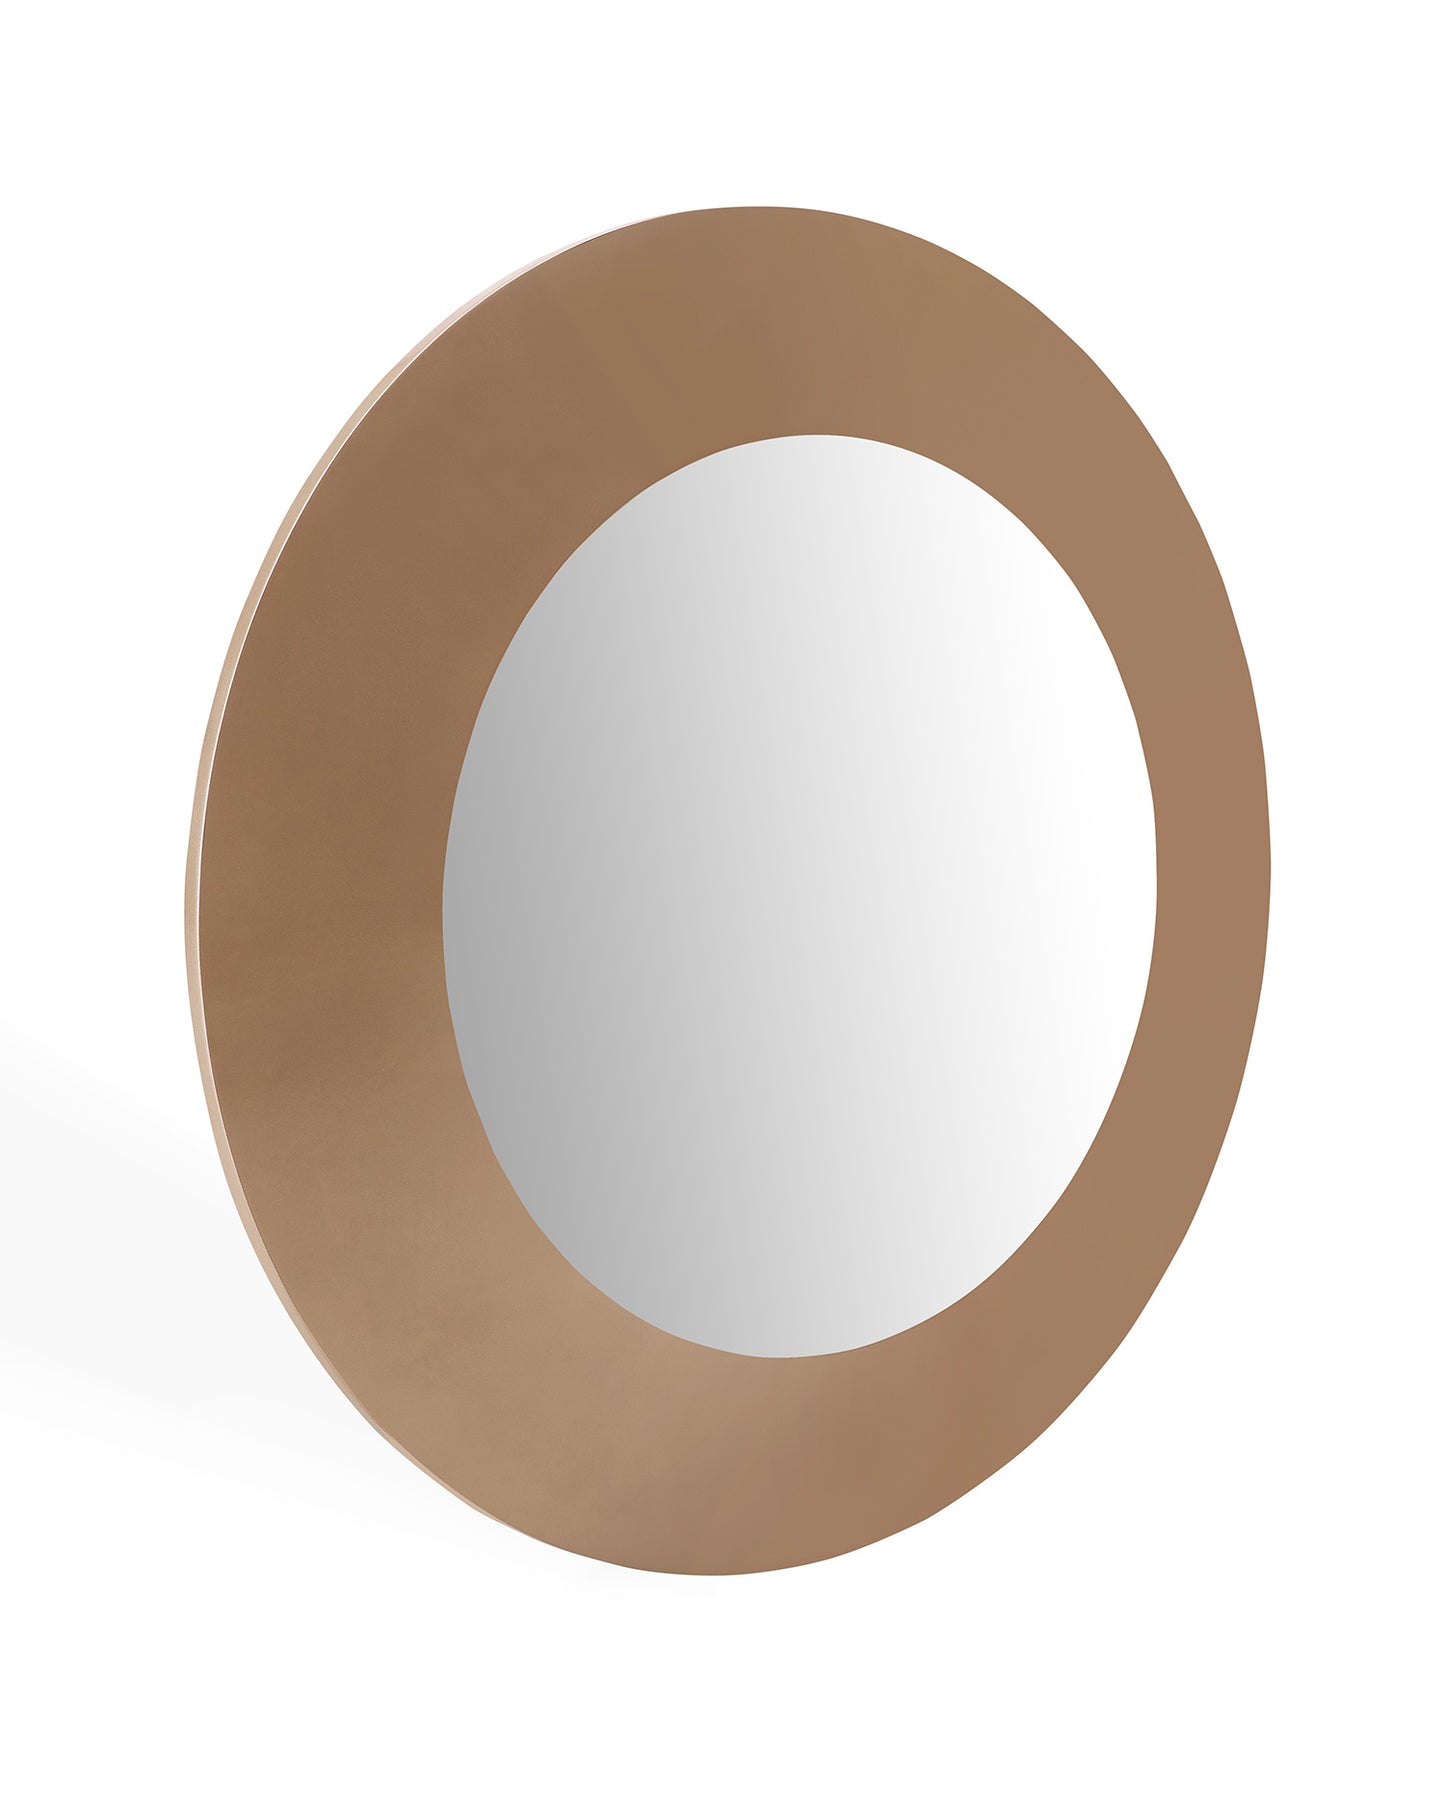 47" Gold Round Framed Accent Mirror